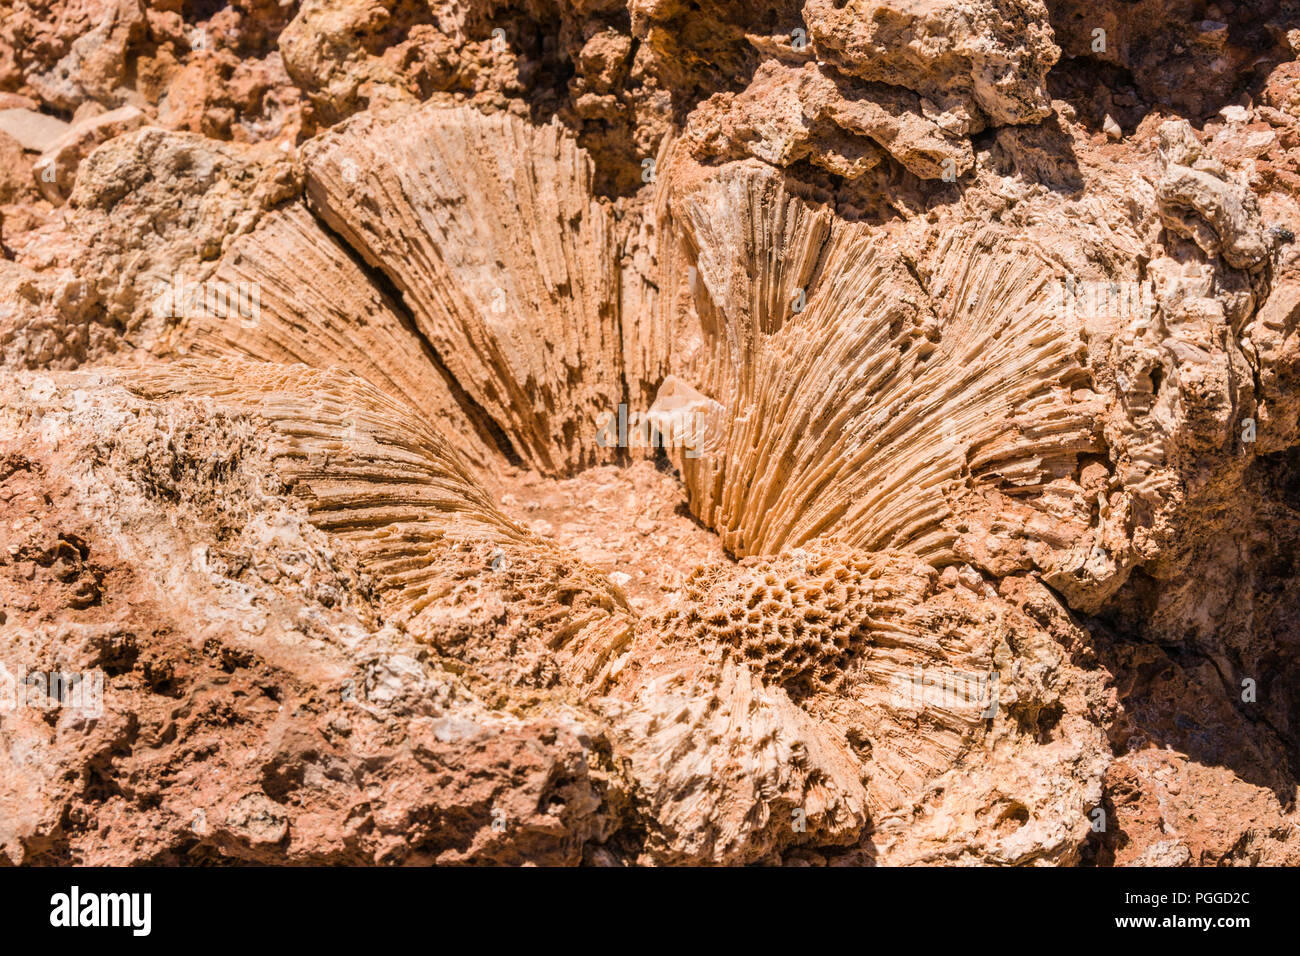 Exmouth, dans l'ouest de l'Australie - Novembre 27, 2009 Gros plan : de grands polypes de corail fossilisé dans des formes de red rock et de pétales de fleur coeur. Banque D'Images